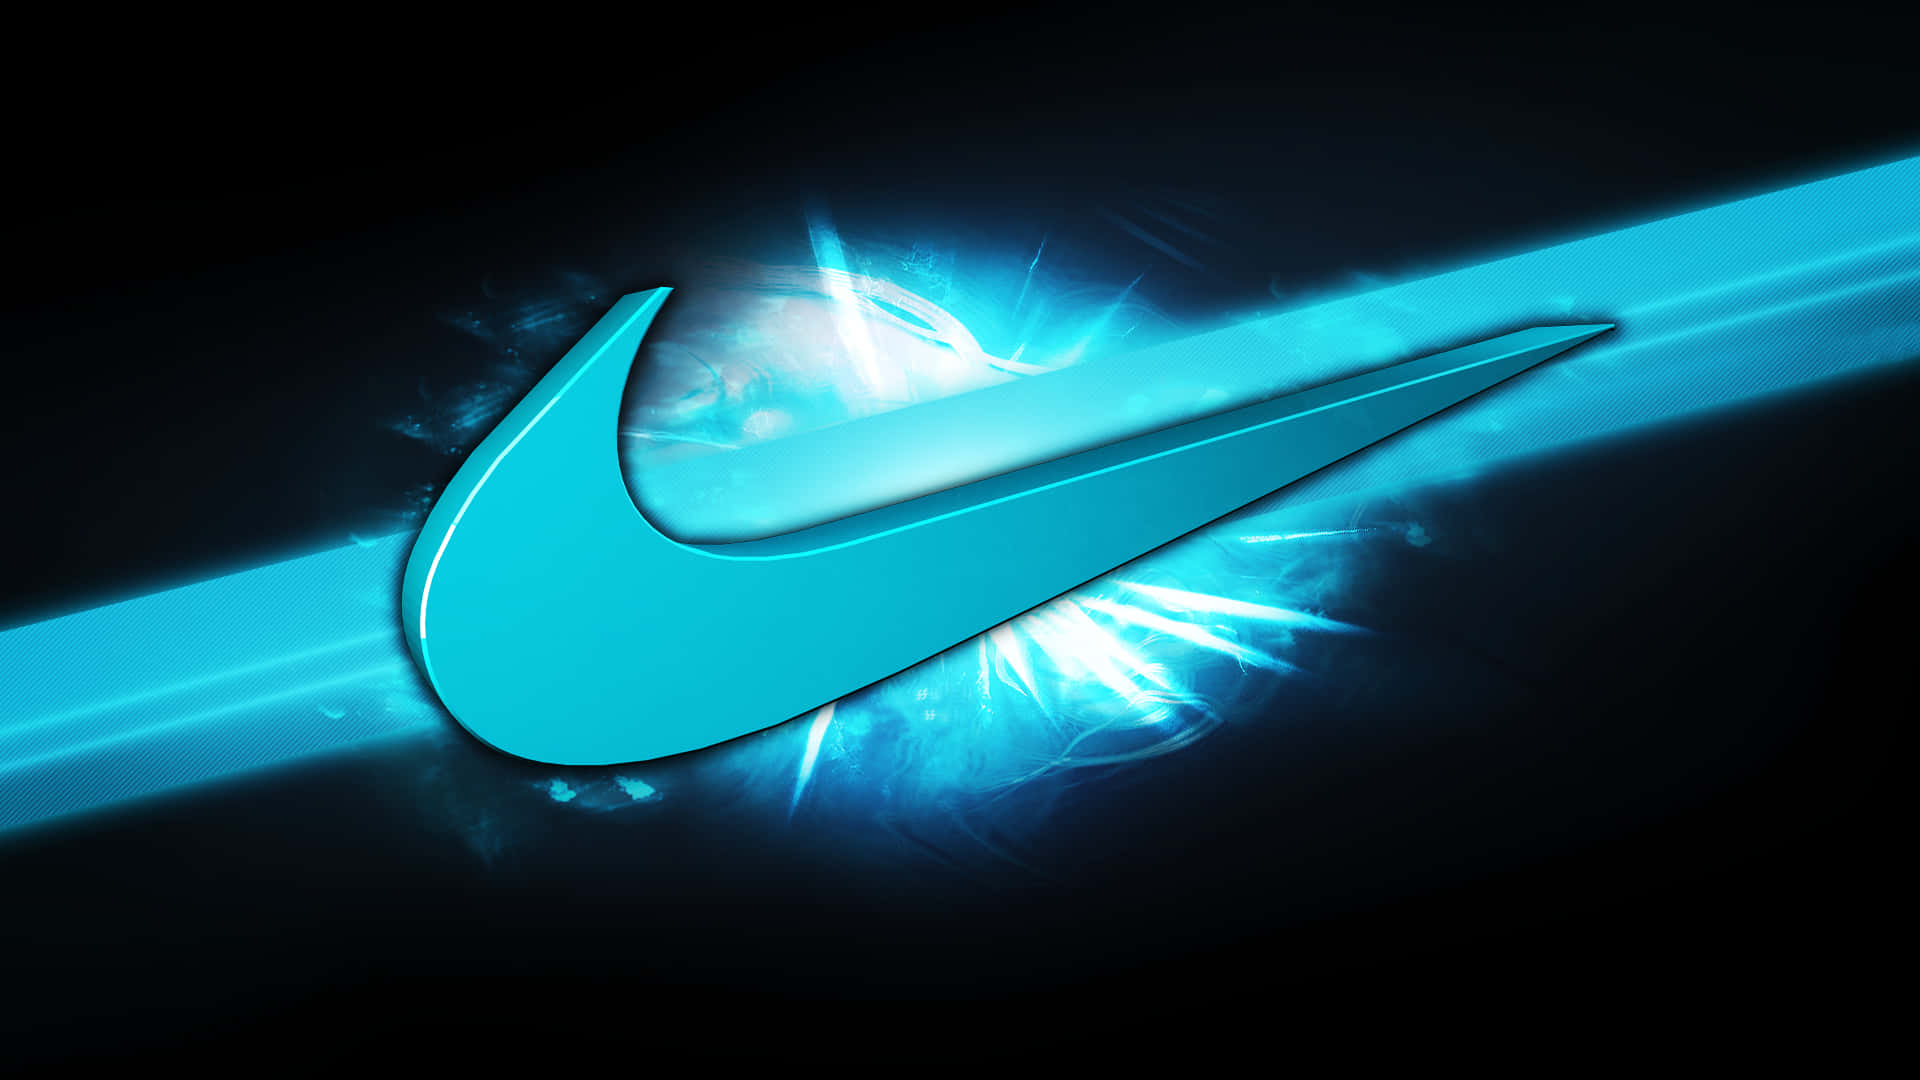 Nikeblaues Logo Wallpaper